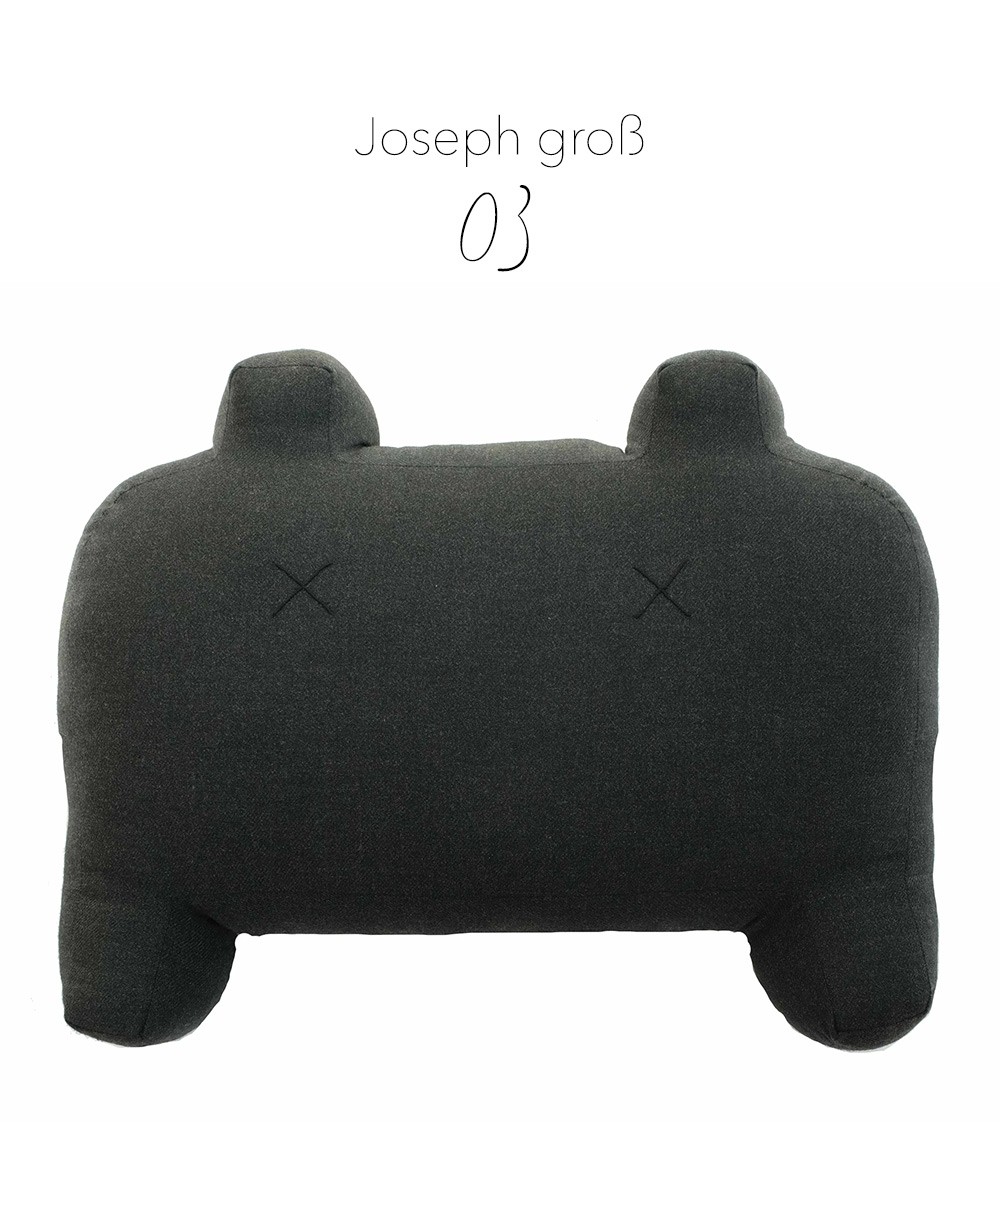 Produktbild des "Monster Joseph groß" in schwarz des Herstellers LPJ im RAUM Conceptstore